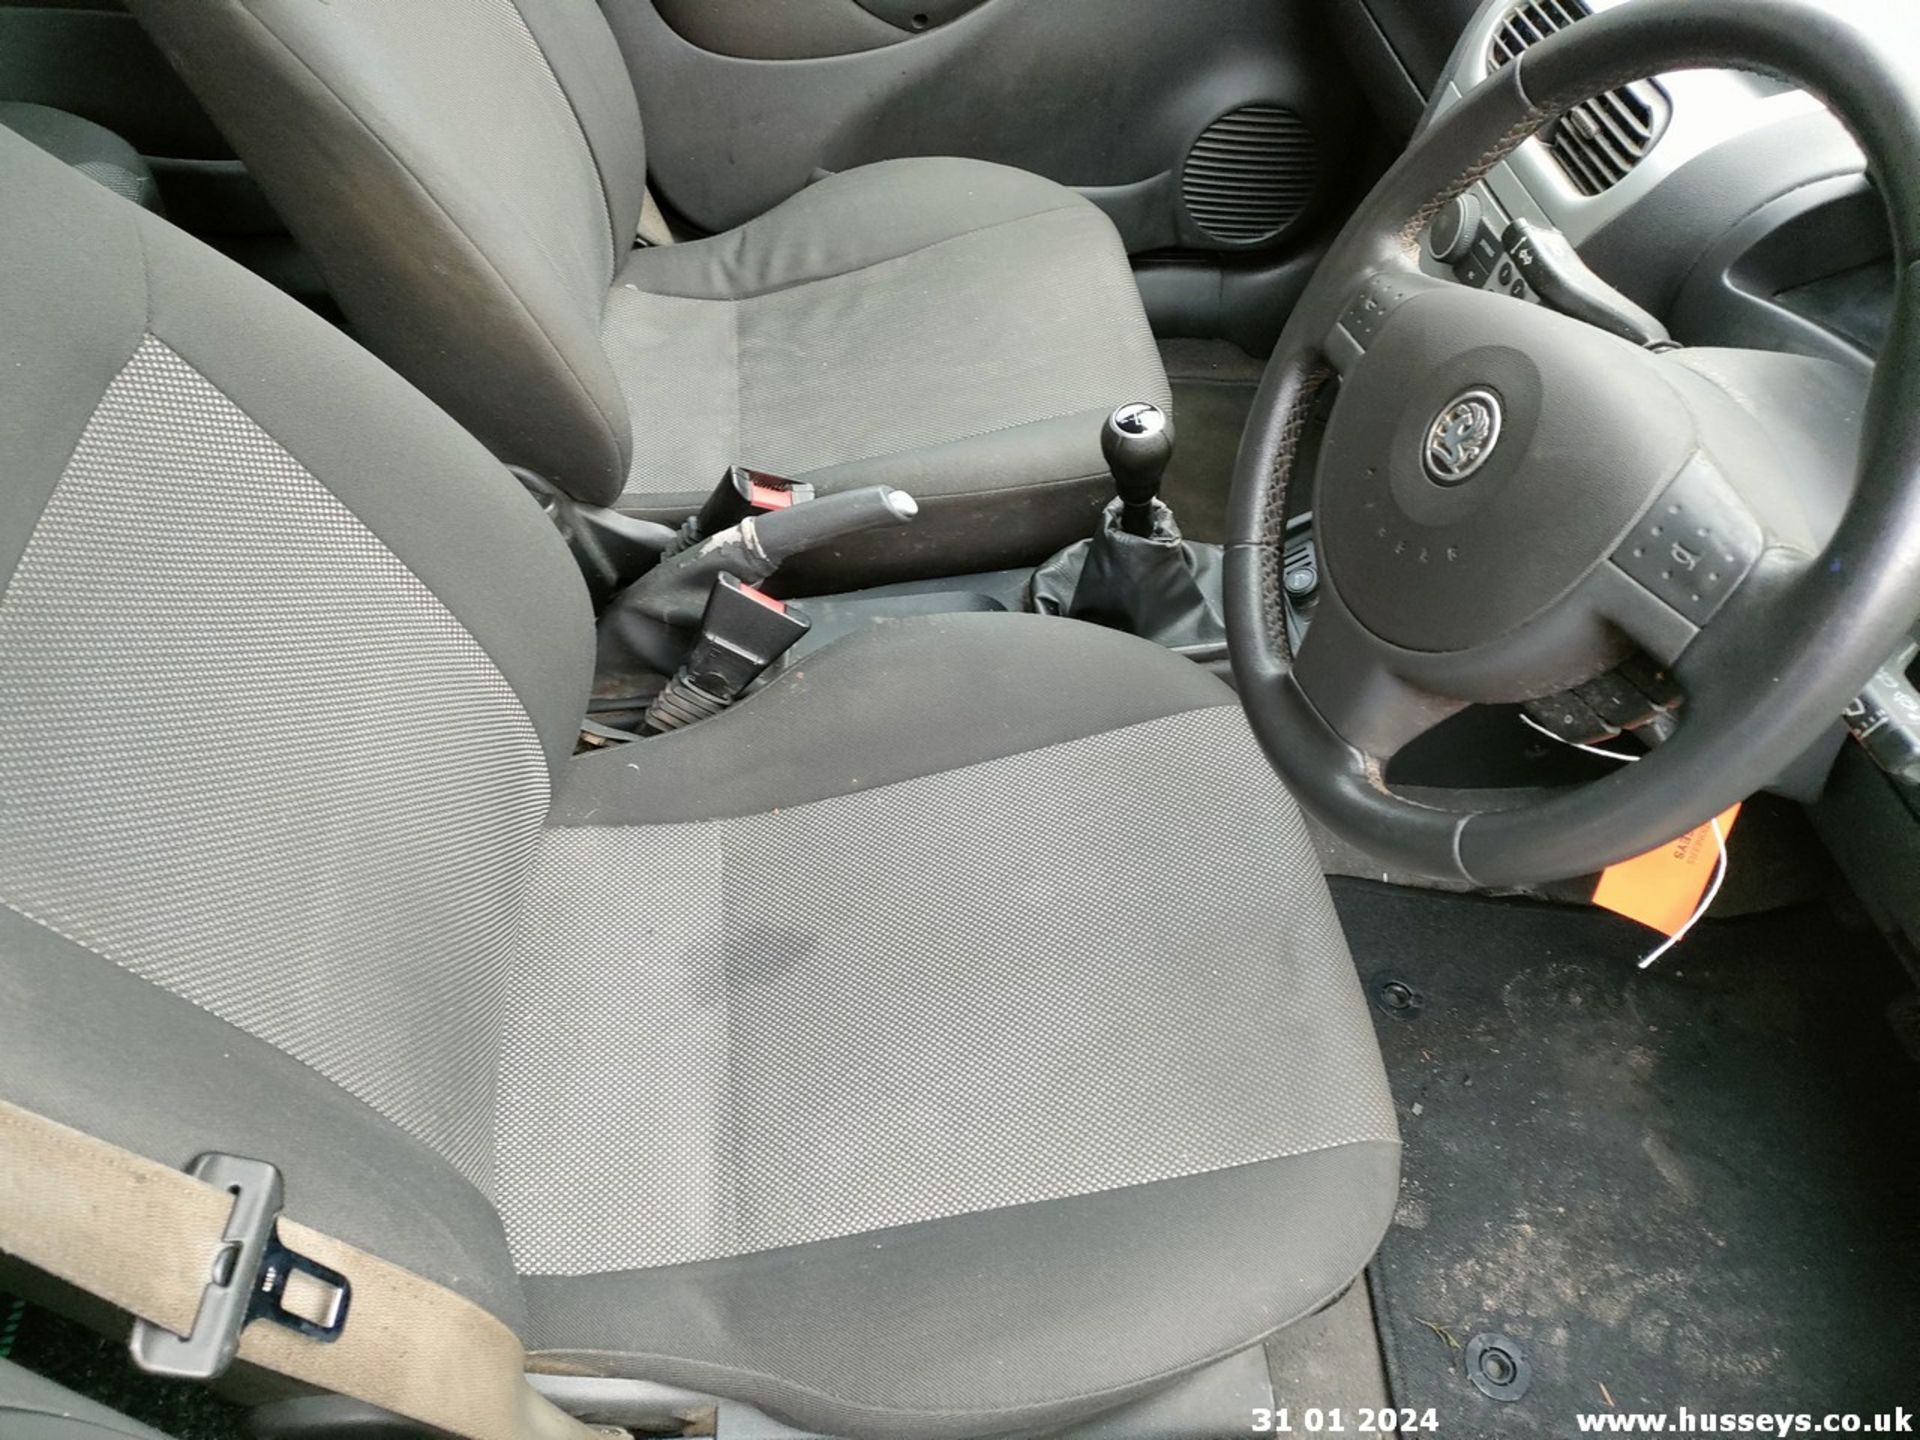 06/56 VAUXHALL CORSA DESIGN 16V TWINPORT - 1364cc 5dr Hatchback (Grey, 110k) - Image 37 of 46